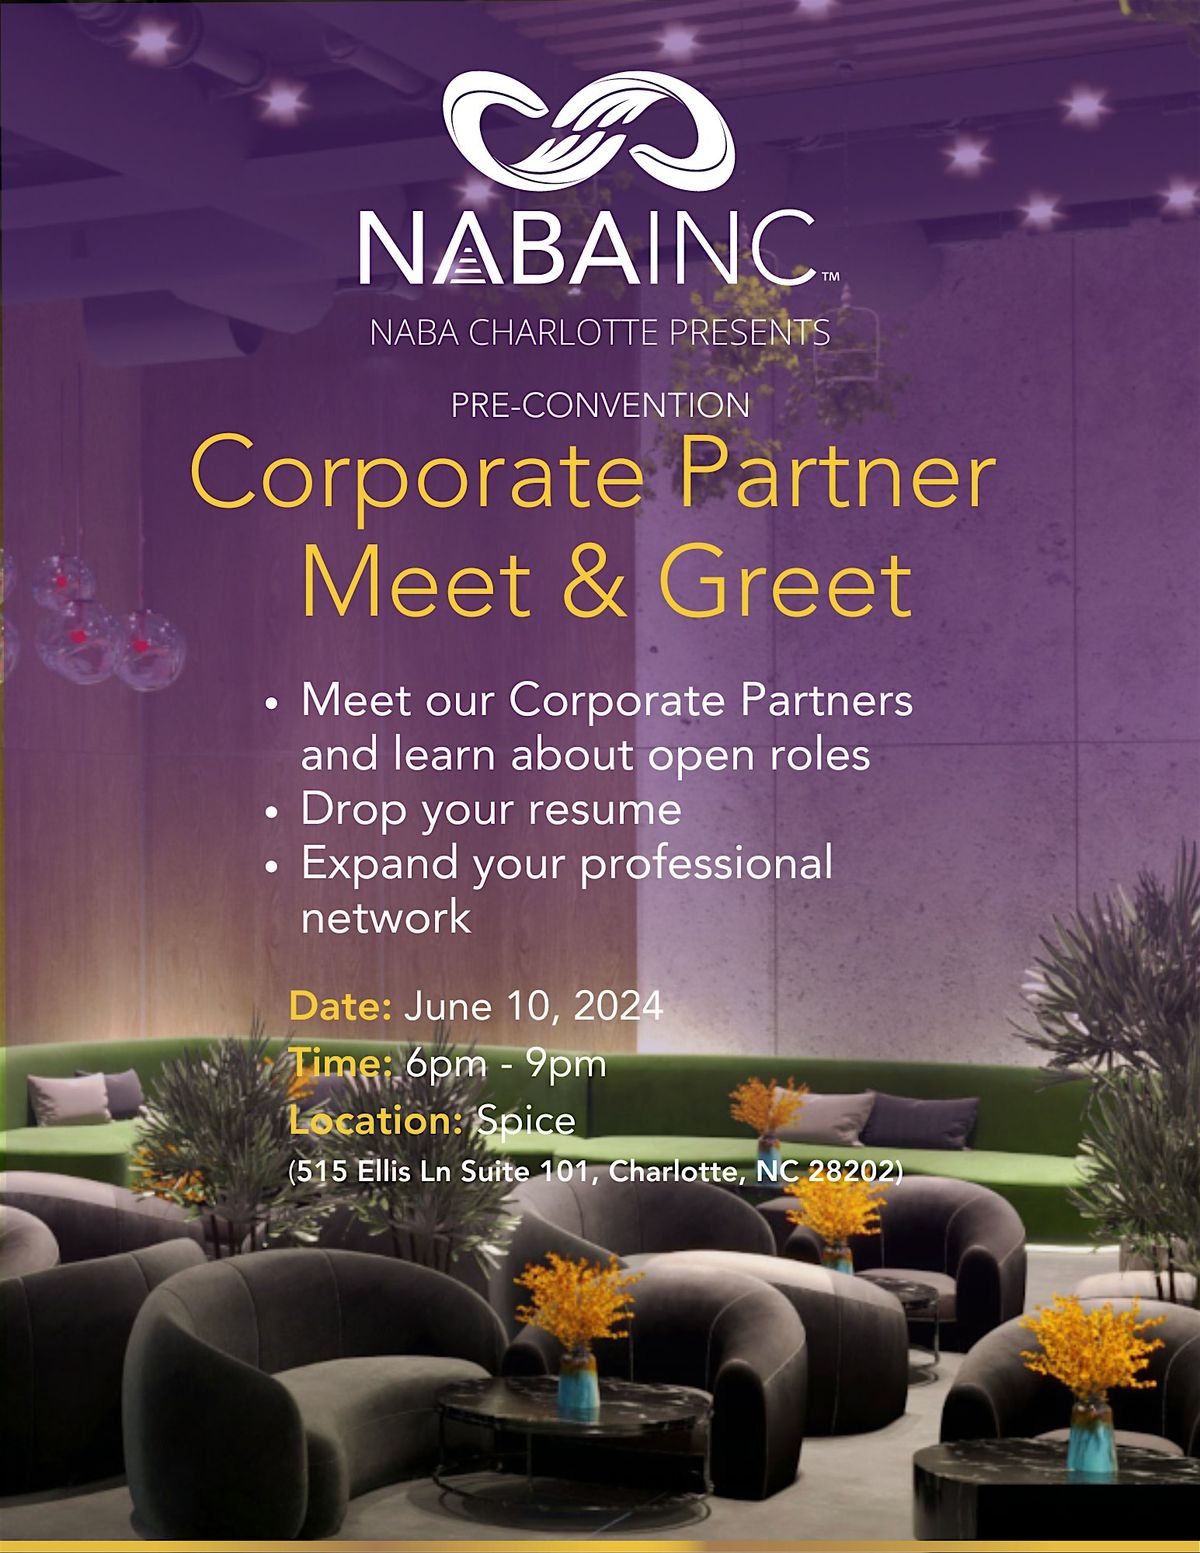 NABA CLT Corporate Partner Meet & Greet